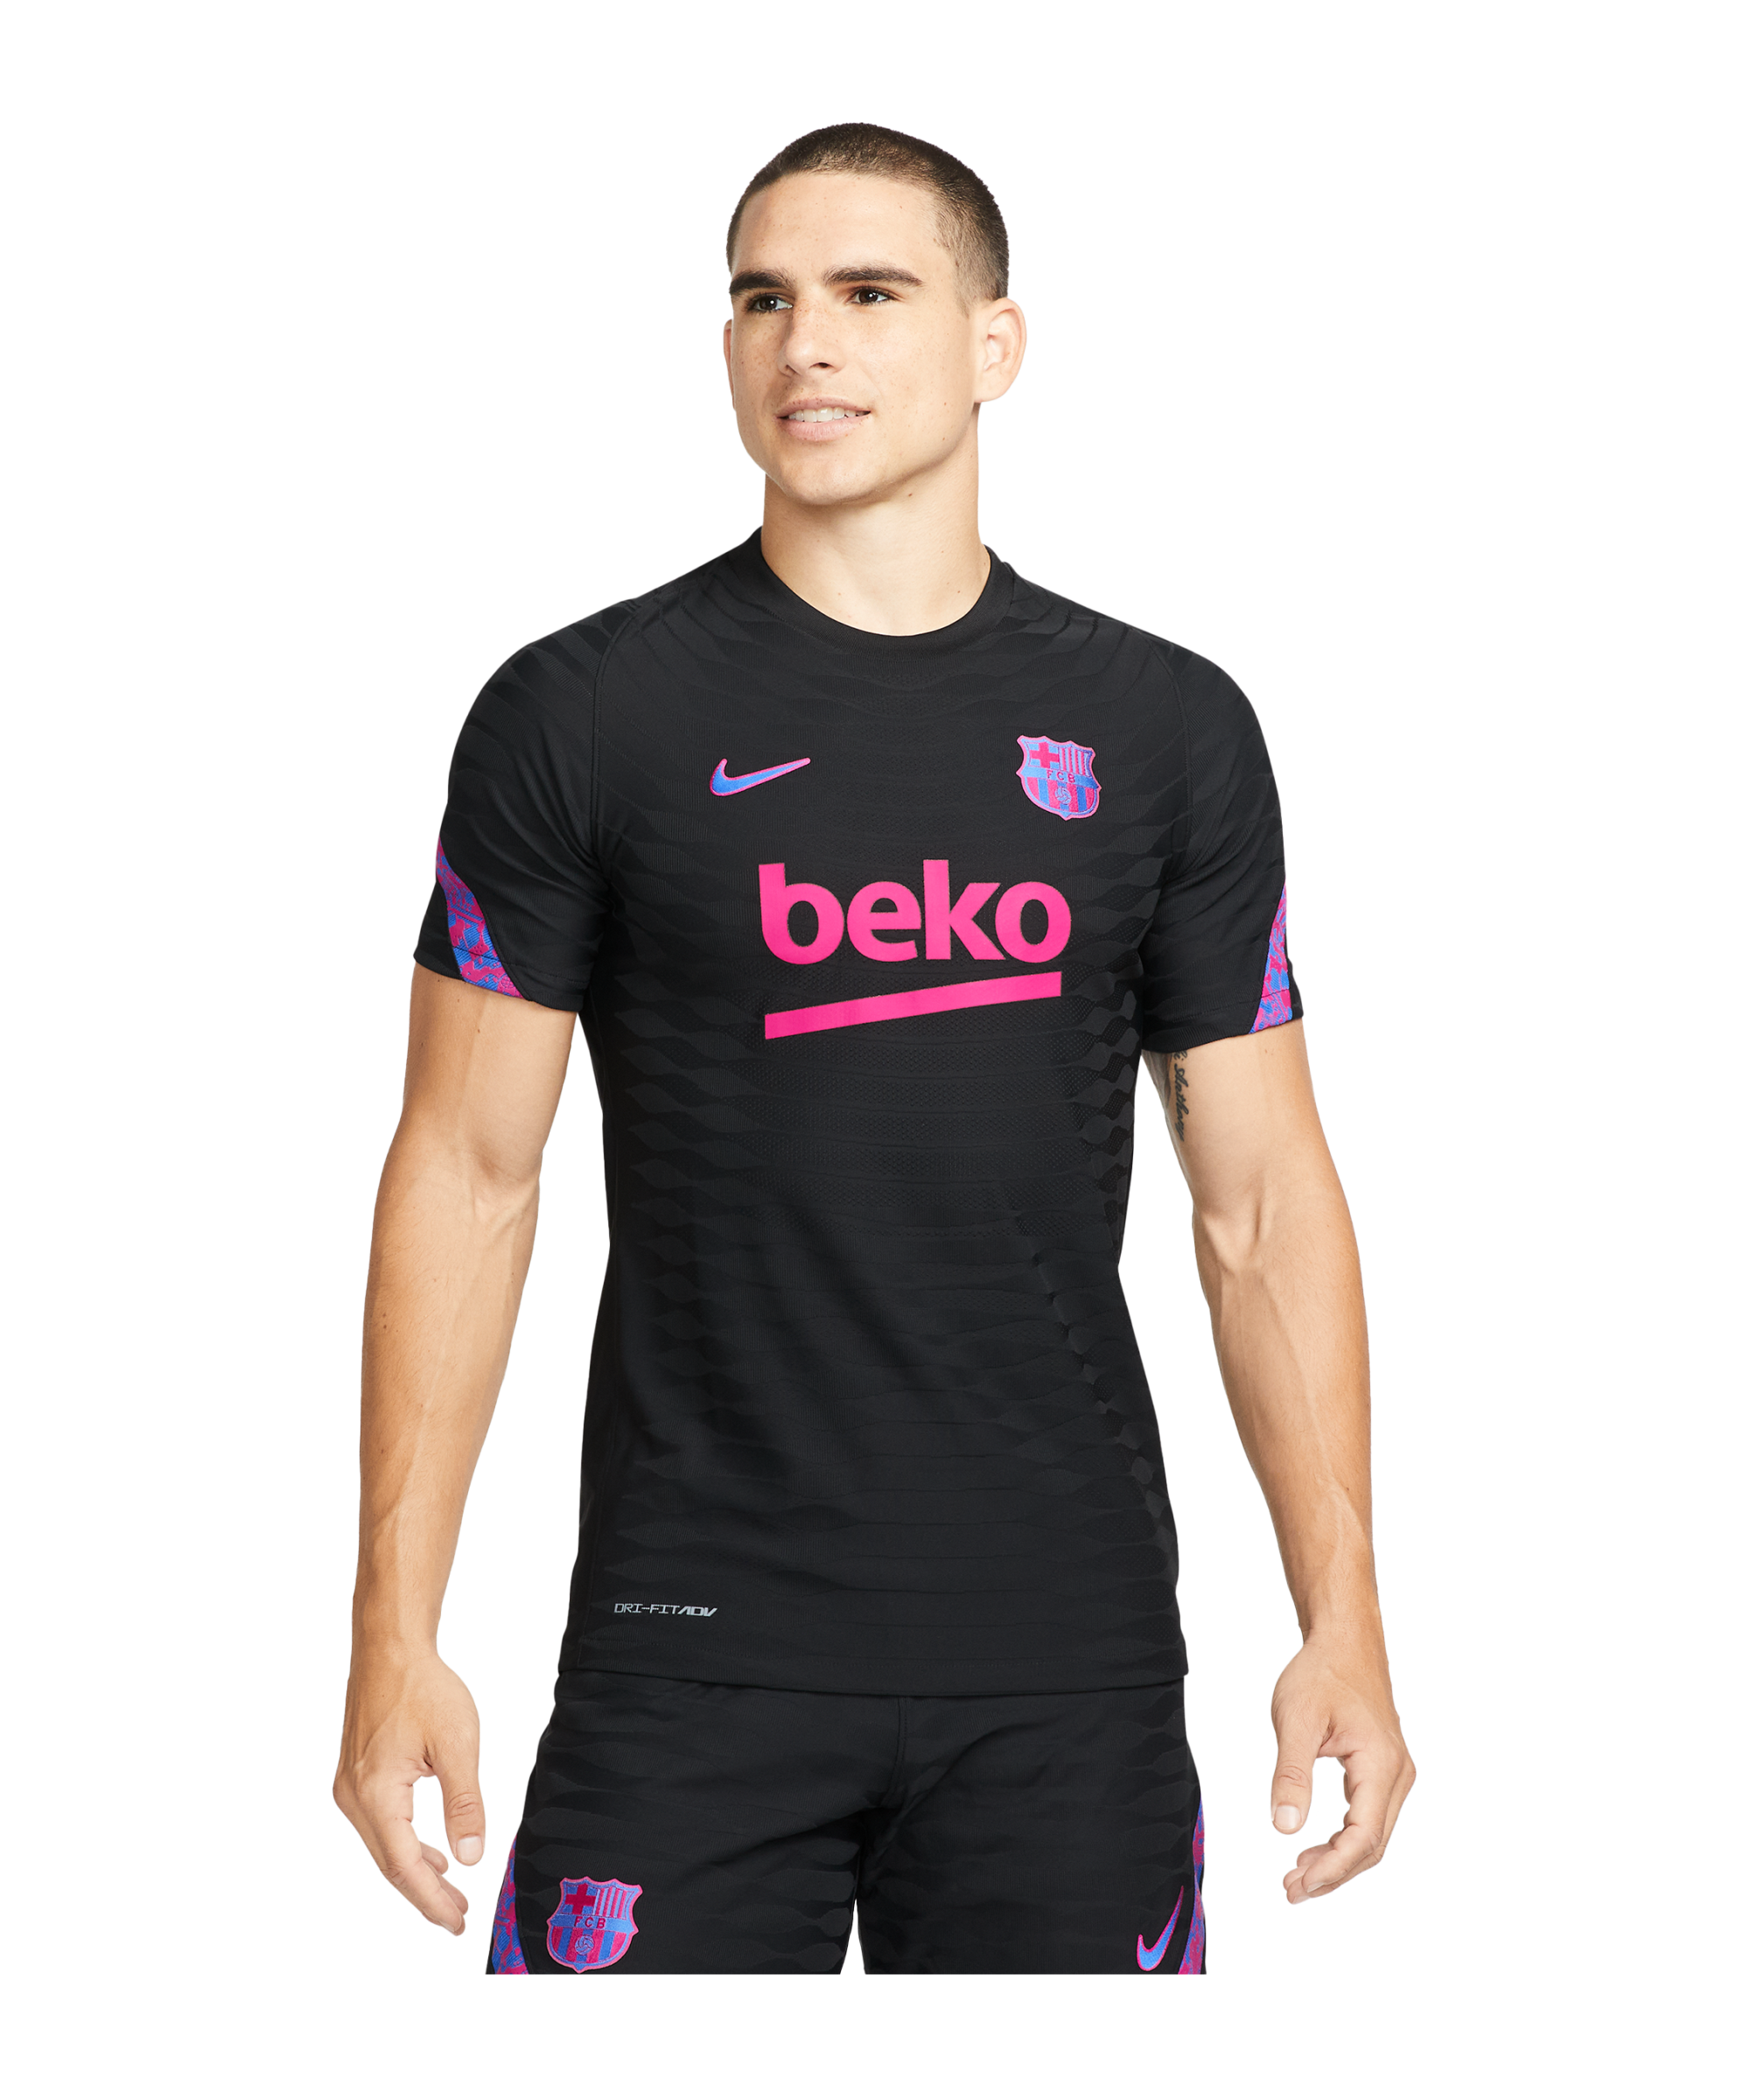 Storen Oxide leerling Nike FC Barcelona Elite Trainingsshirt - Black